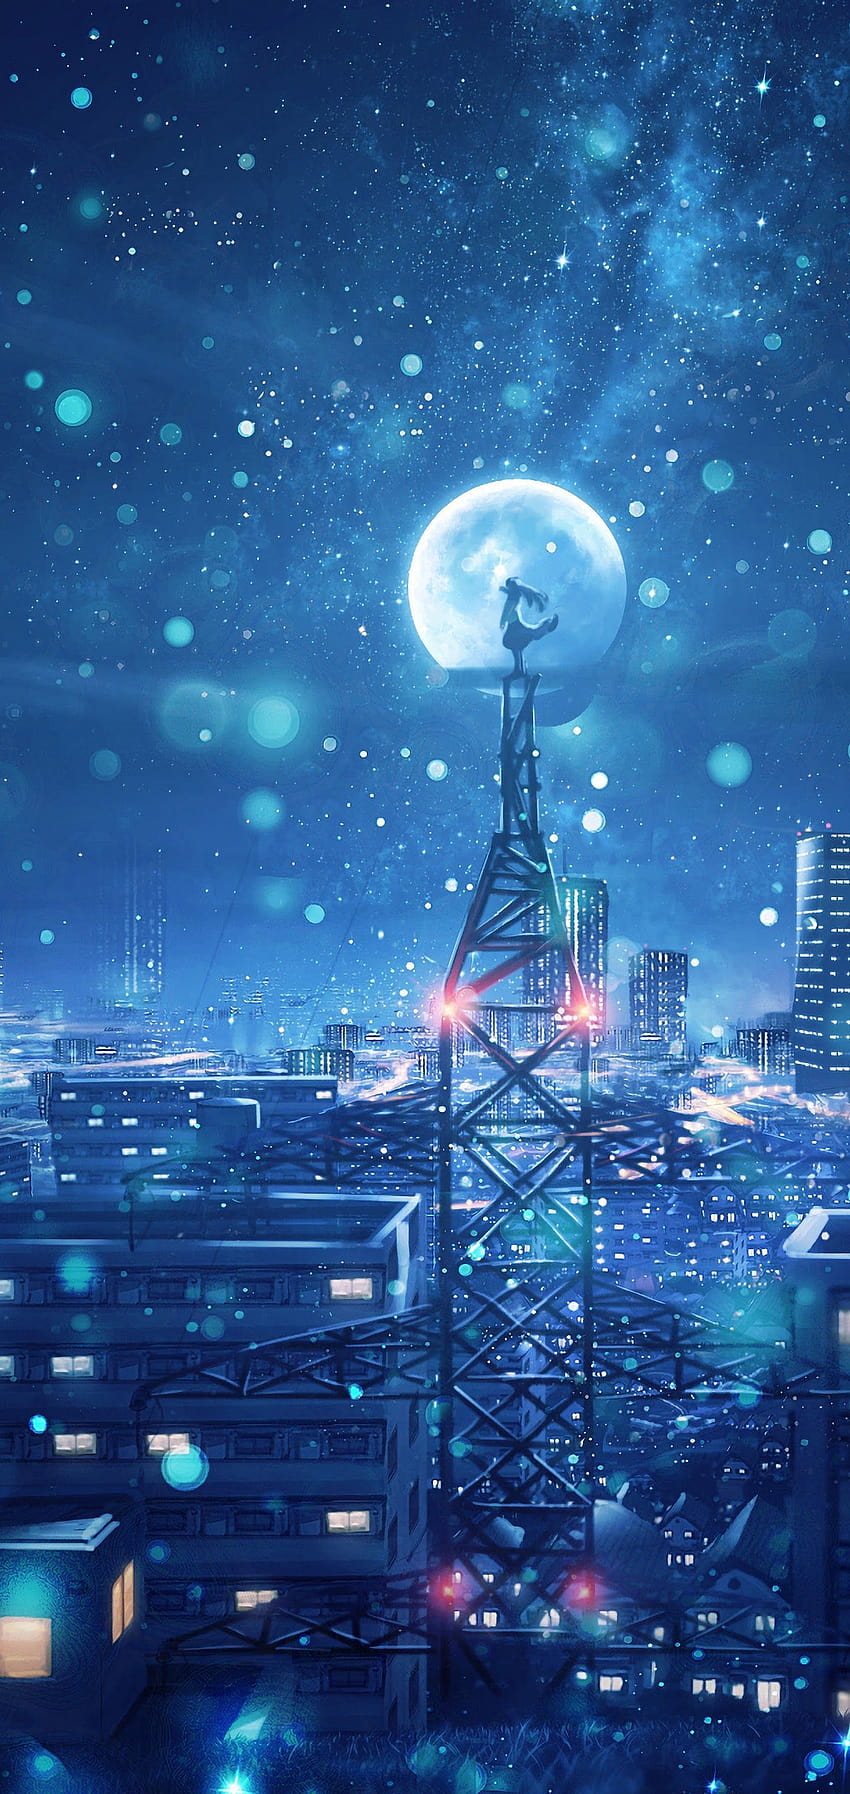 Mùa đông anime (Anime Winter): Hãy cùng chiêm ngưỡng vẻ đẹp tuyệt vời của mùa đông anime nhé! Với tuyết rơi, cảnh quan trắng xoá, và các nhân vật yêu thích, khoảnh khắc này sẽ để lại ấn tượng khó phai. Hãy tận hưởng khoảng thời gian này cùng những người bạn đáng yêu trong không gian anime.